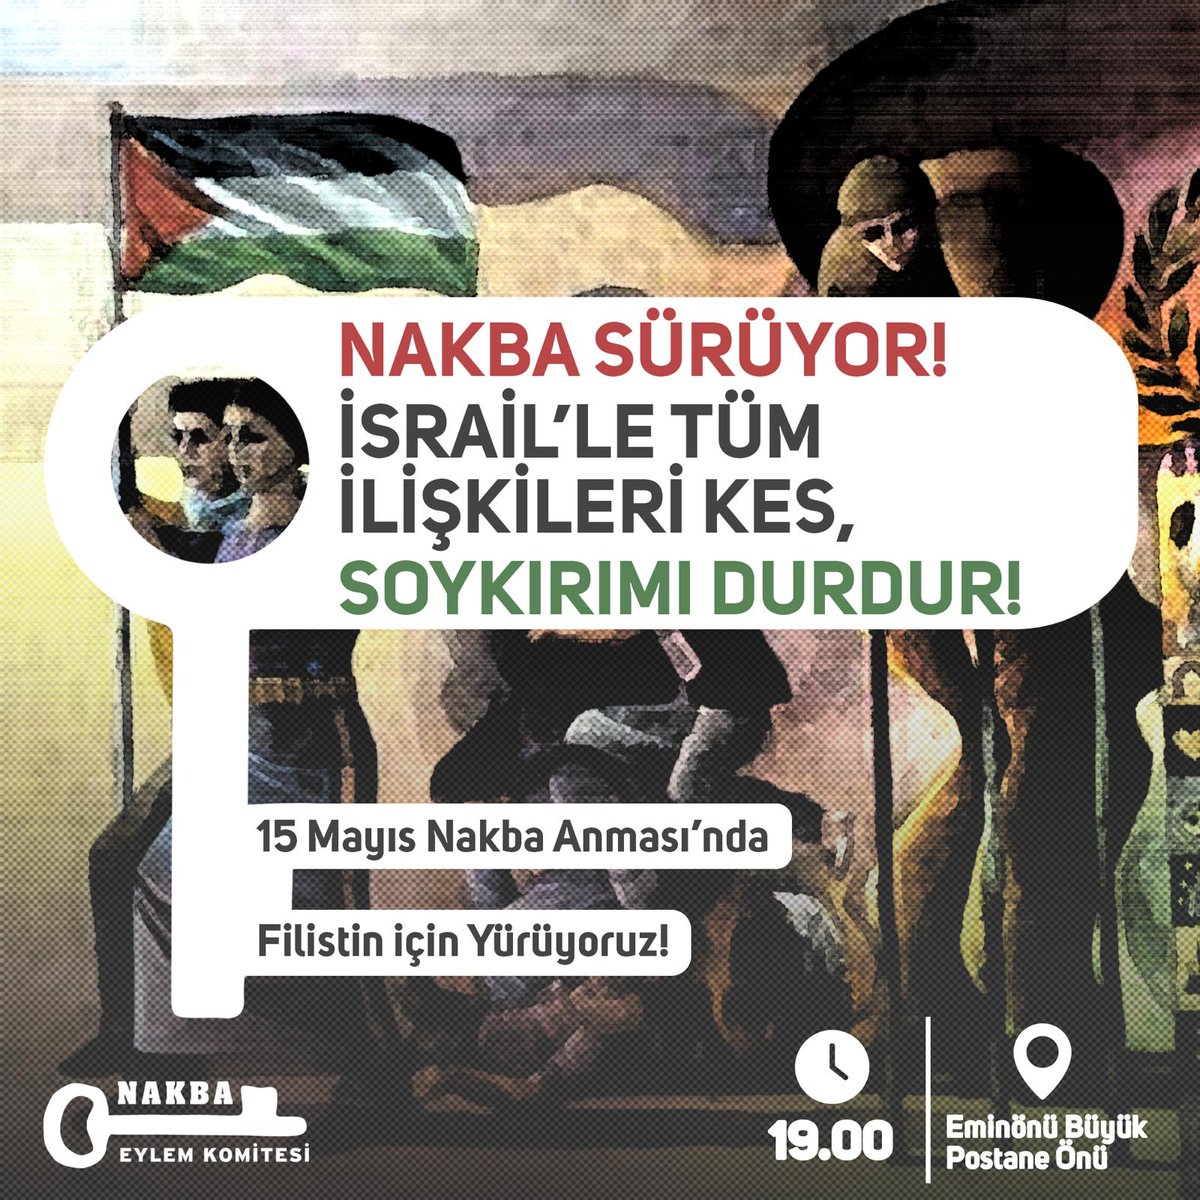 NAKBA sürüyor! 15 Mayıs Nakba Anması'nda Filistin için yürüyoruz. 🕖19:00 📍Eminönü Büyük Postane Önü 🗓 15 Mayıs Çarşamba #İsrailleTümİlişkileriKes #SoykırımıDurdur